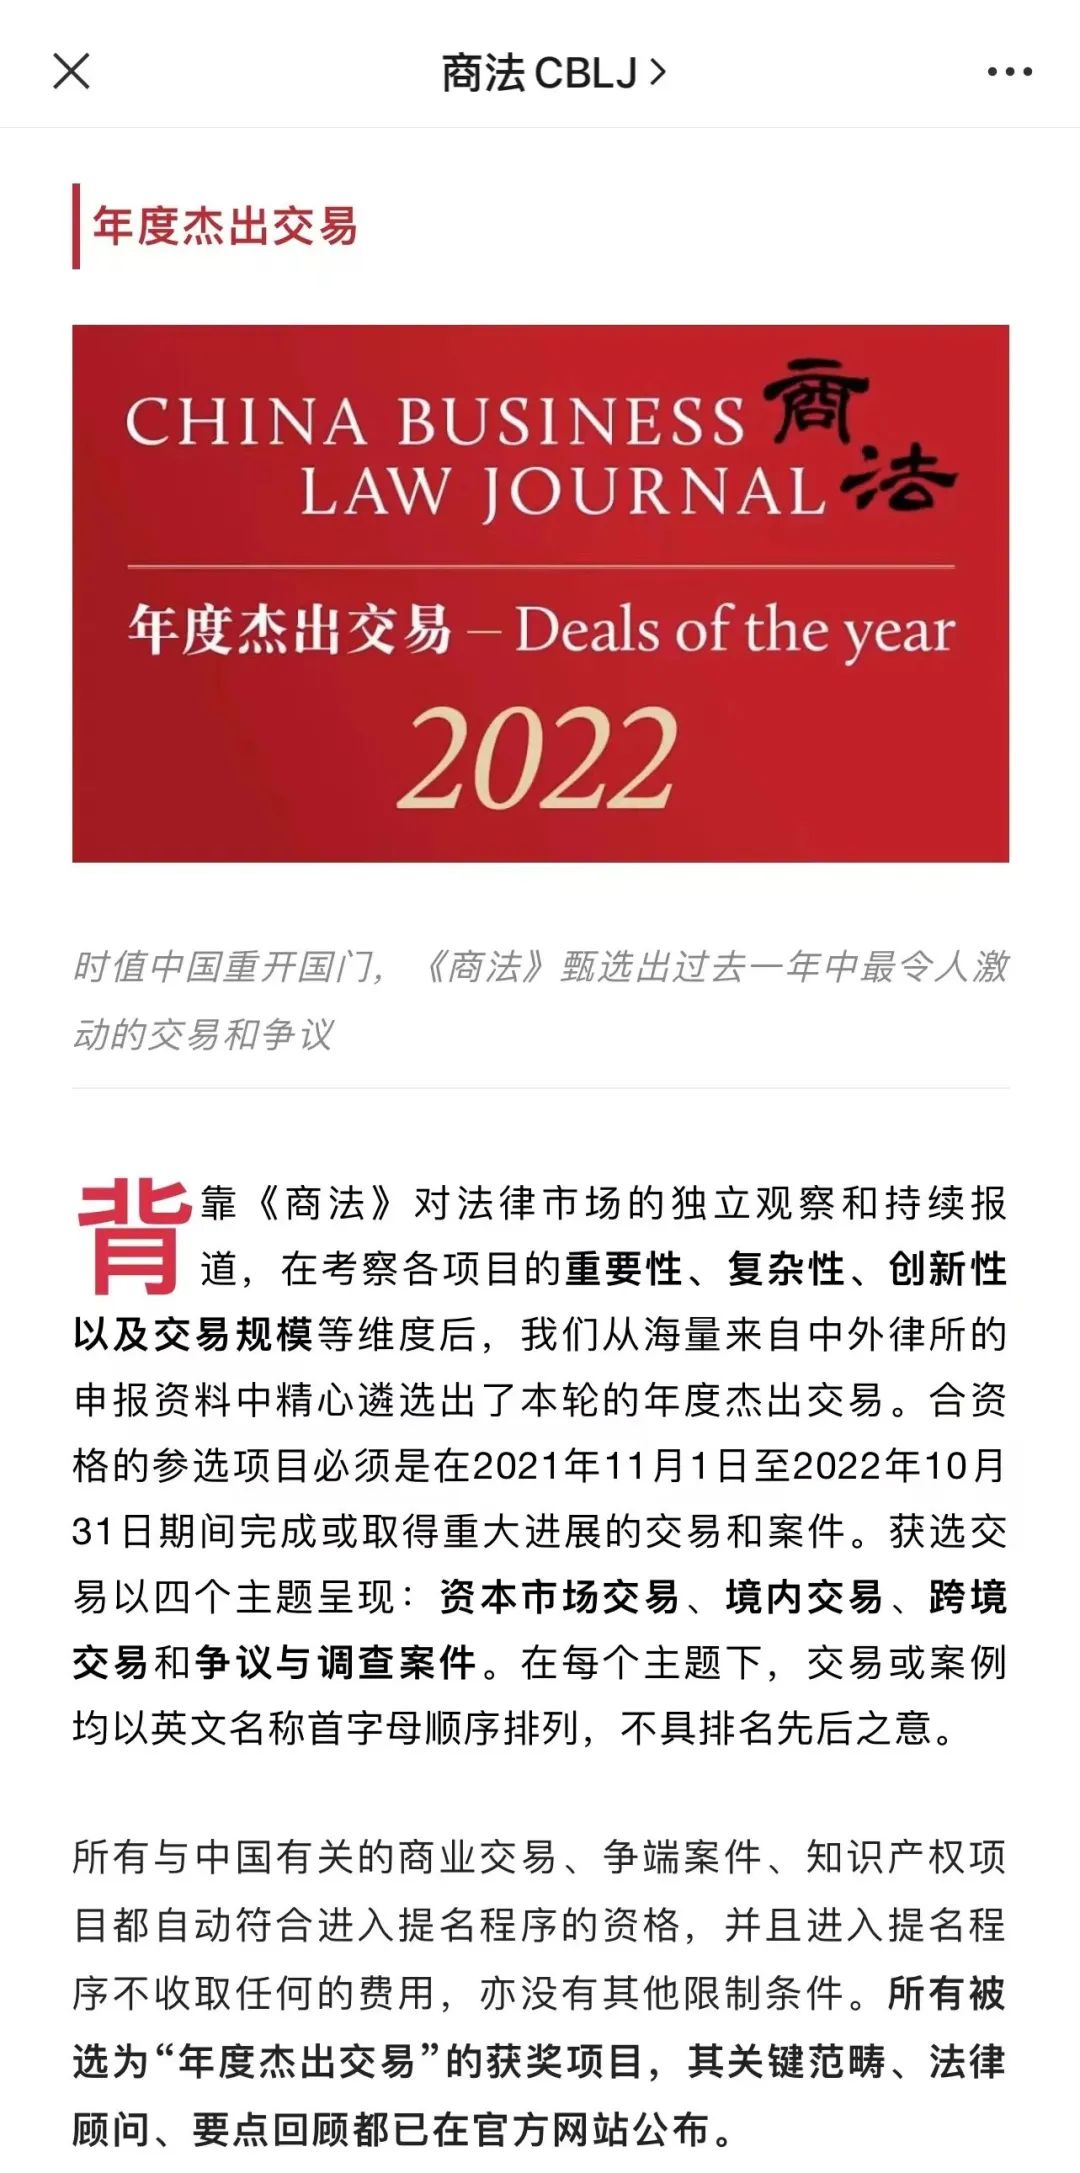 炜衡刘丹律师襄助中国华融参与华晨地产共益债投资项目，该项目荣获《商法》2022年“年度杰出交易”并入选湖南高院“十大典型案例”